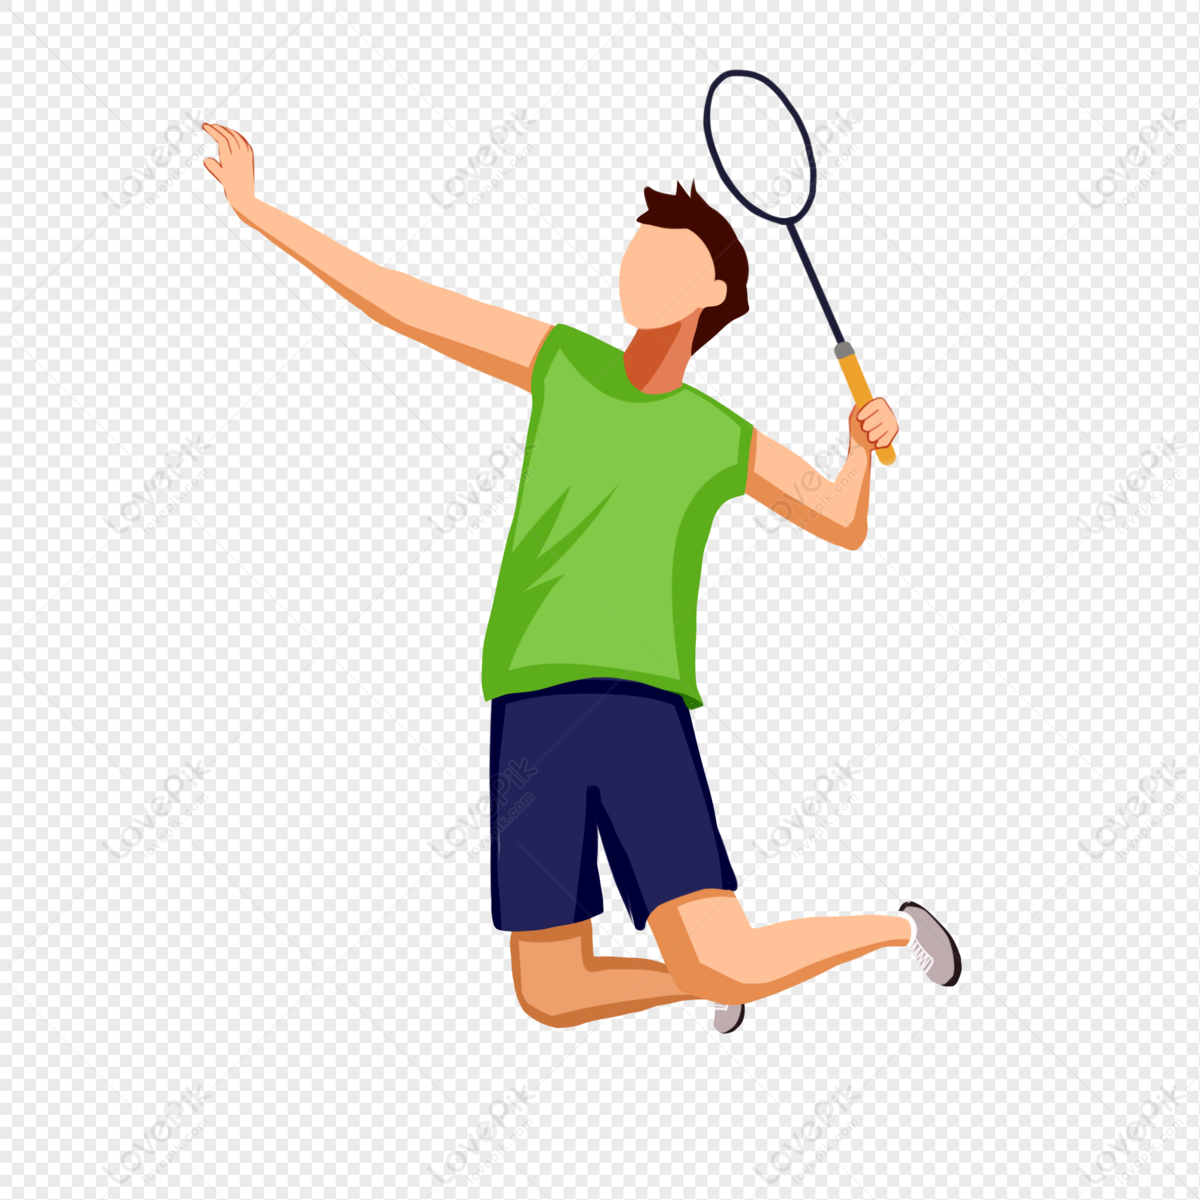 Player badminton Lin Dan